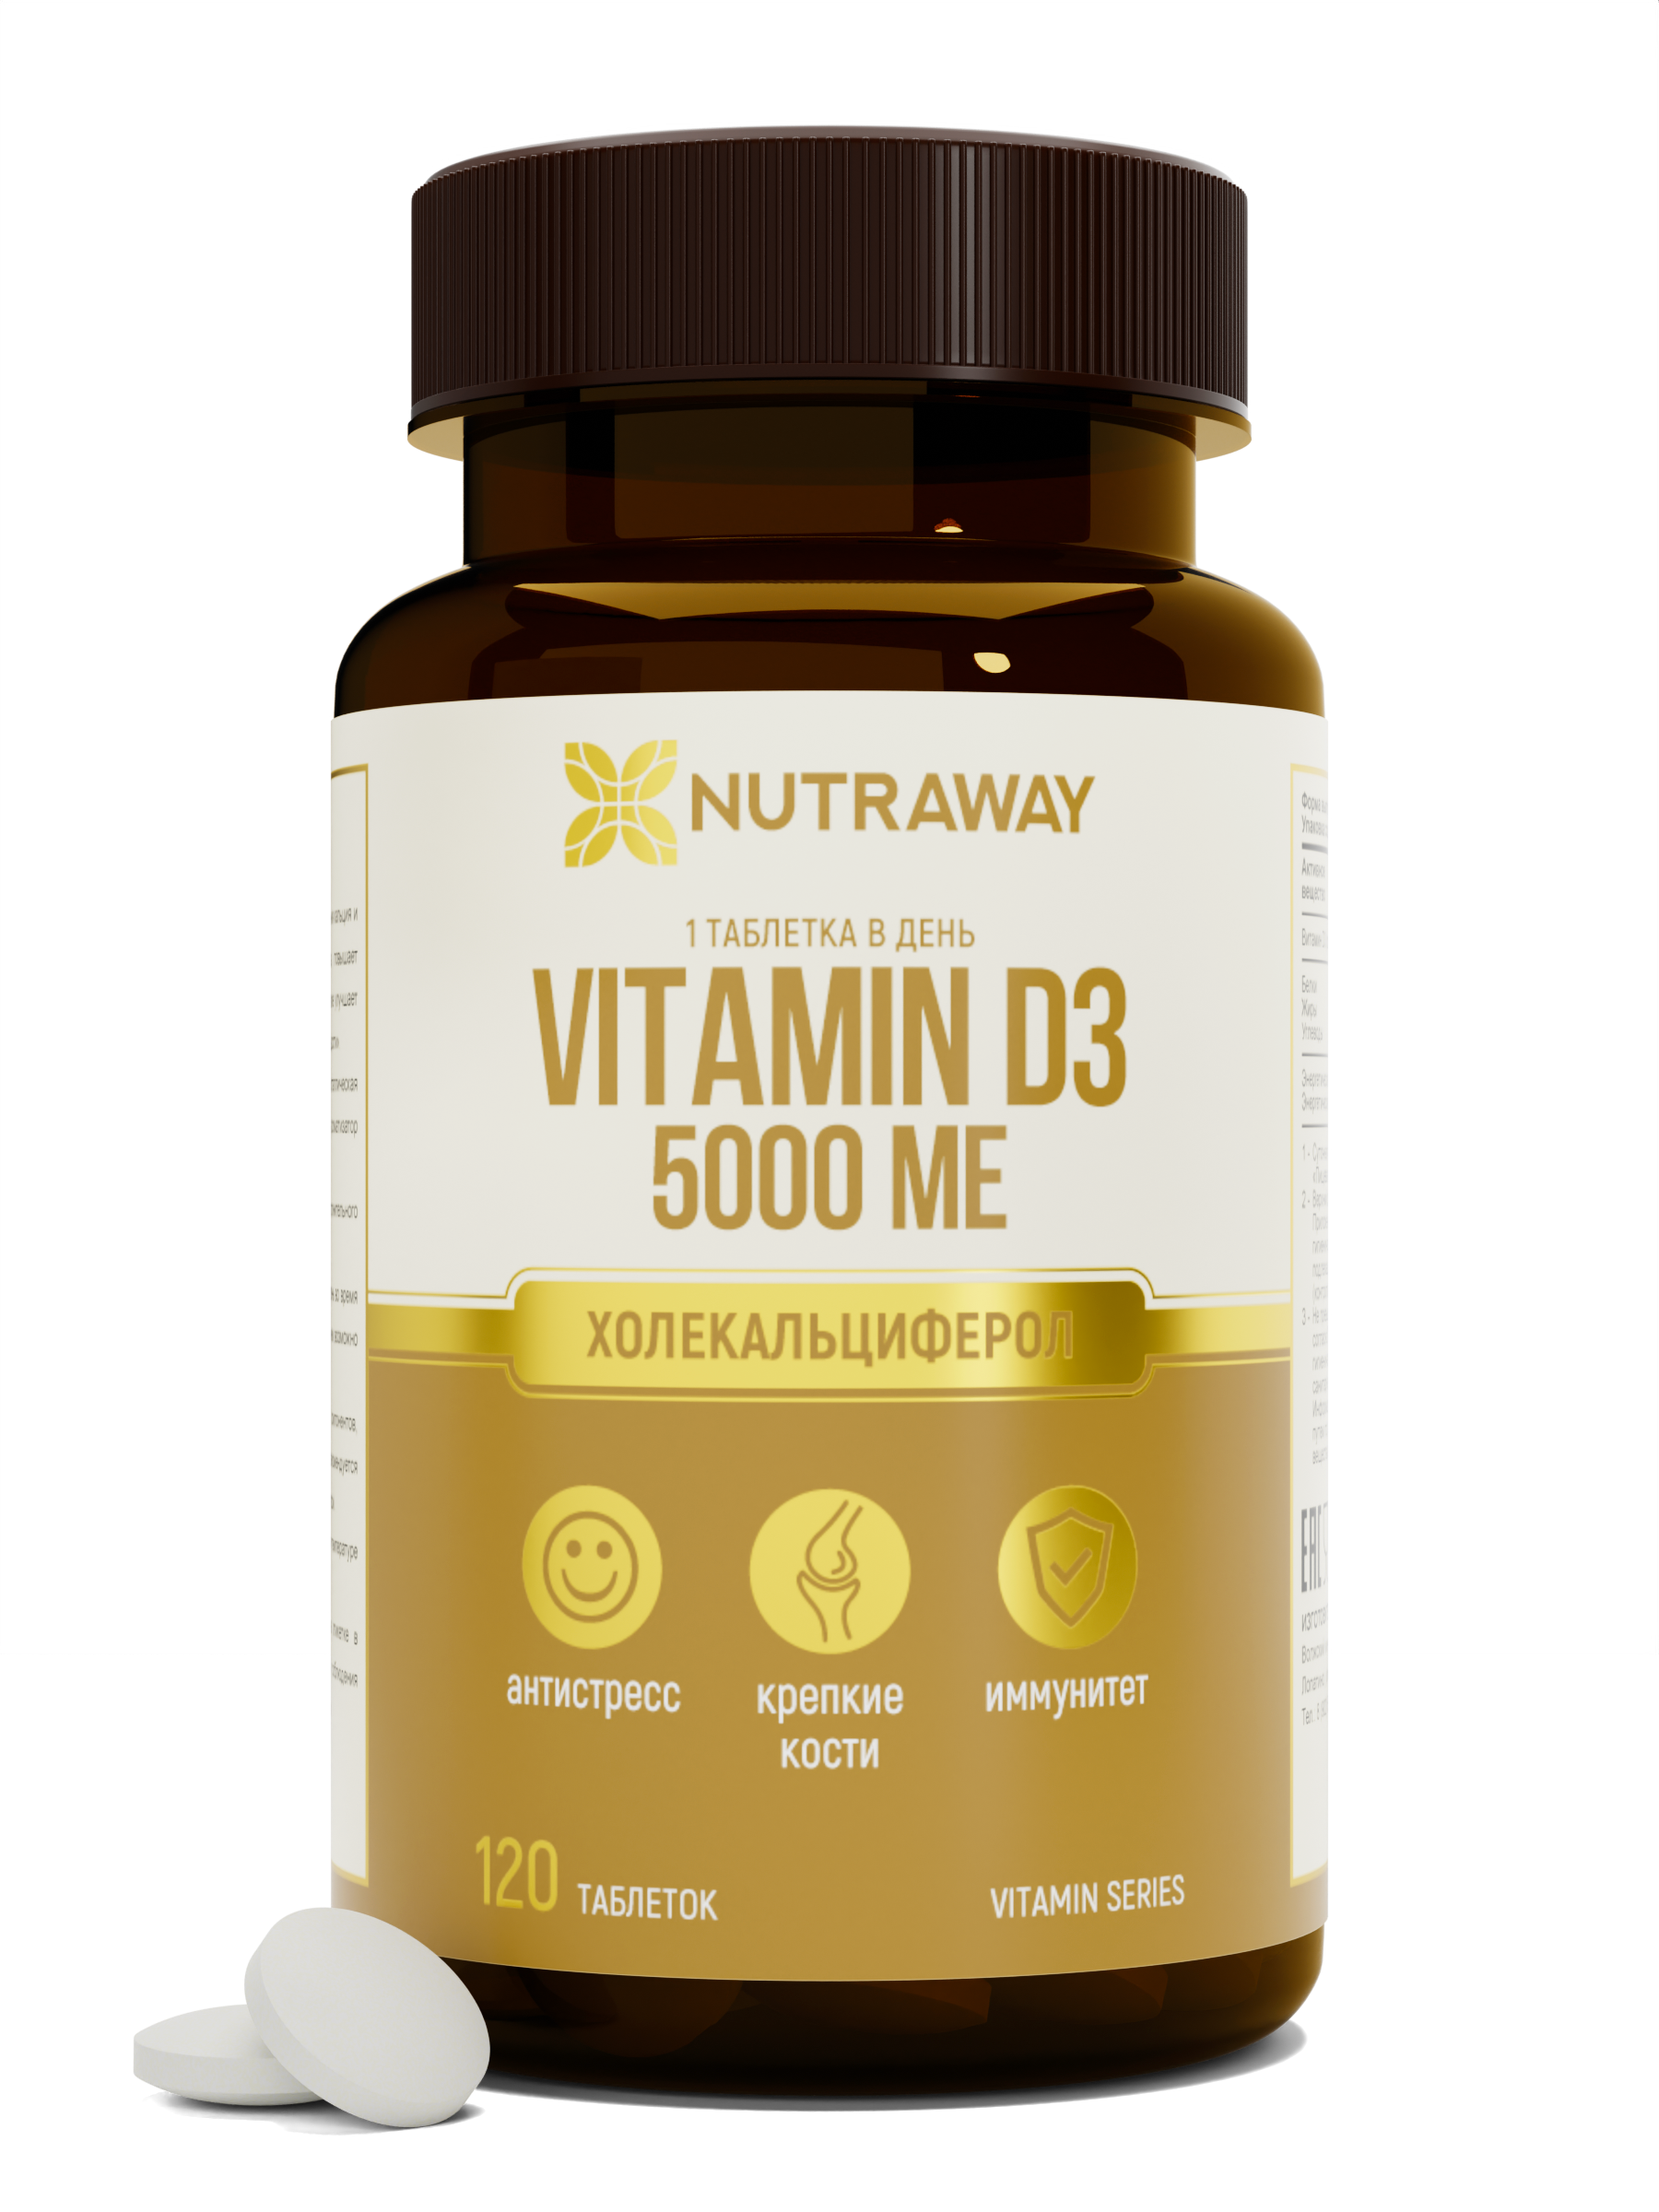 Купить Витамин Д3 NUTRAWAY Vitamin D3 таблетки 5000 ME 120 шт.